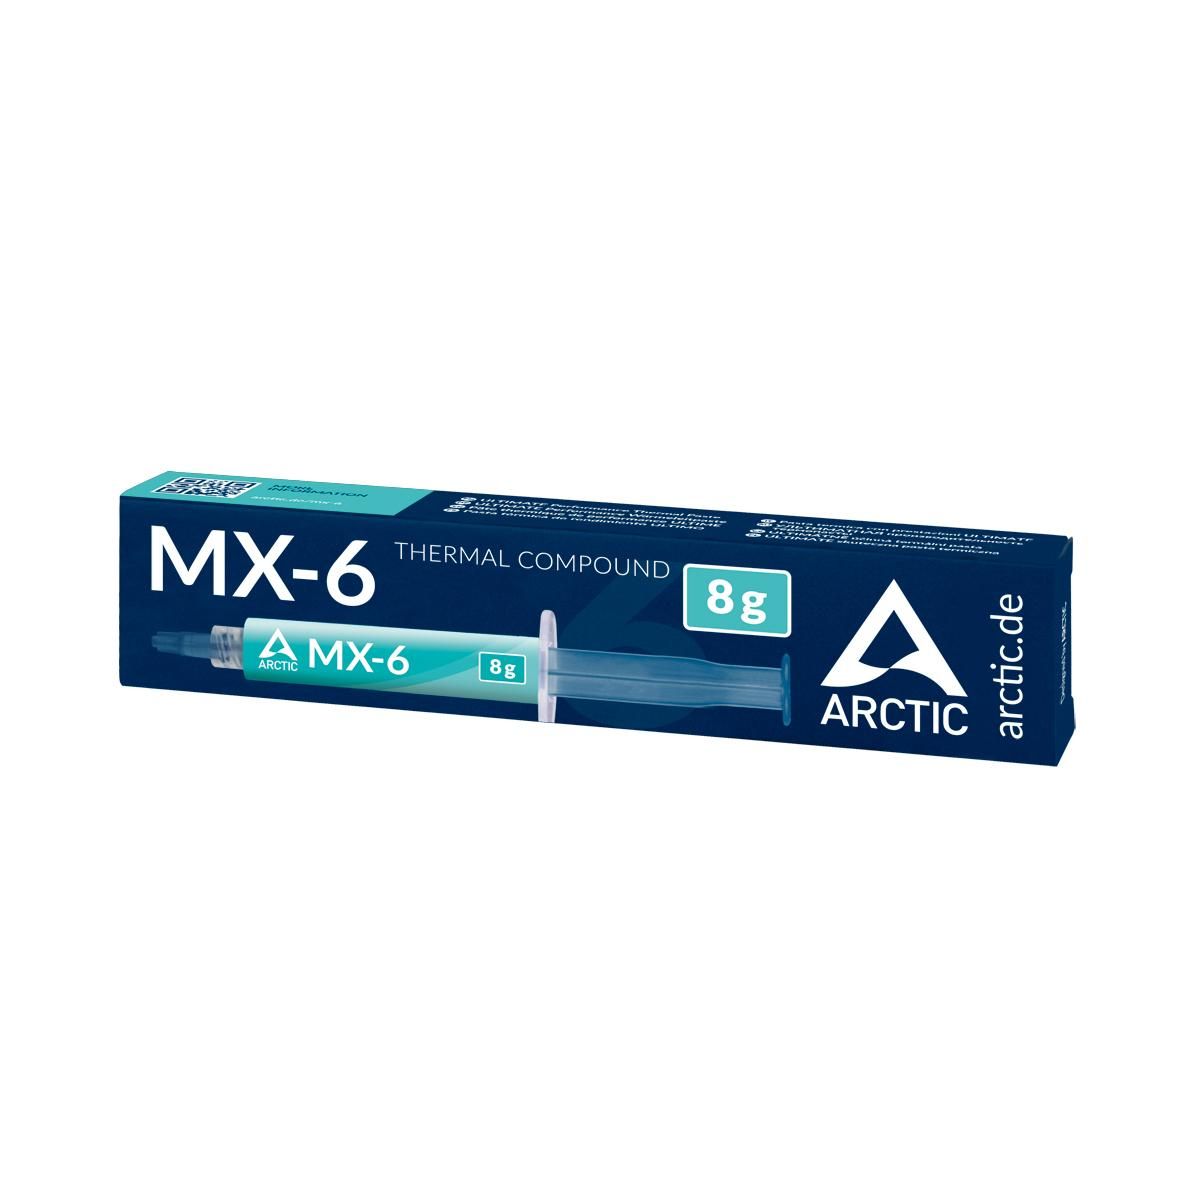 Arctic MX-6, La mejor pasta térmica del mercado — Review en Español